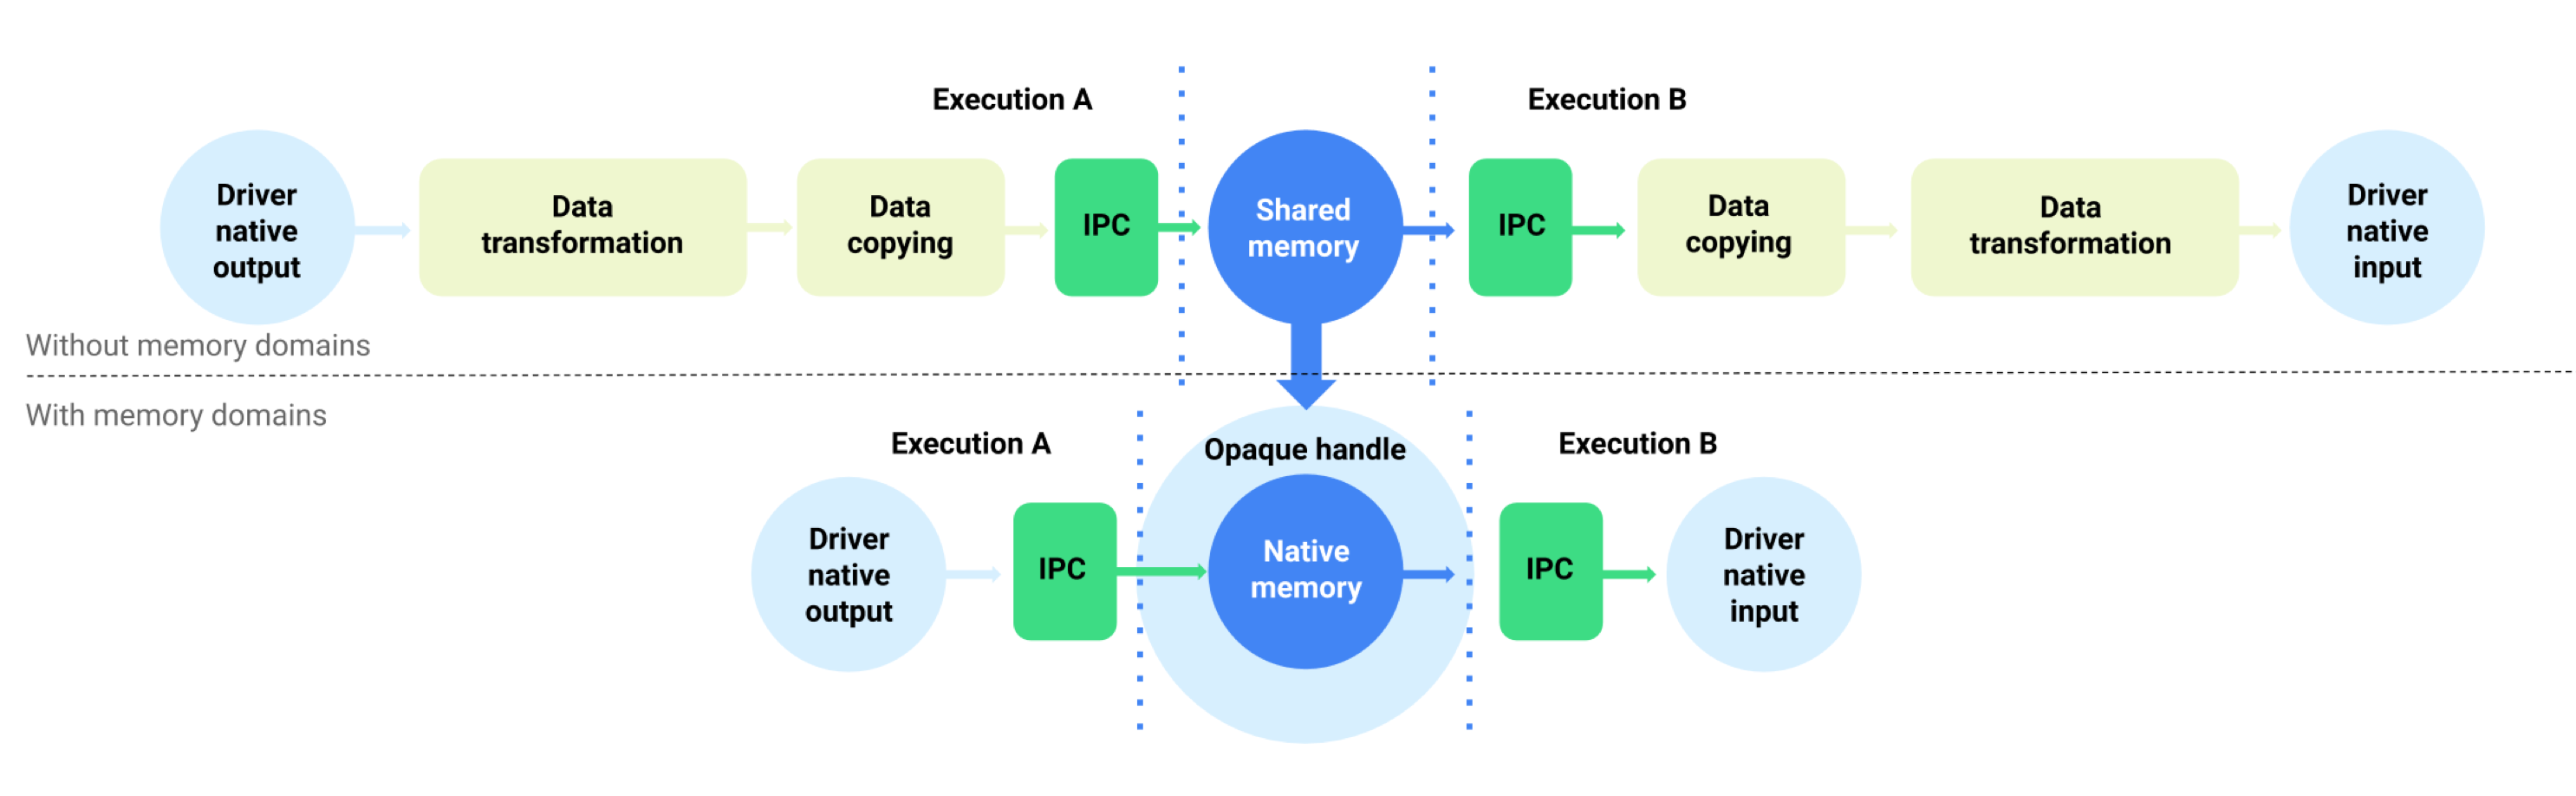 تخزين البيانات مؤقتًا مع نطاقات الذاكرة وبدونها